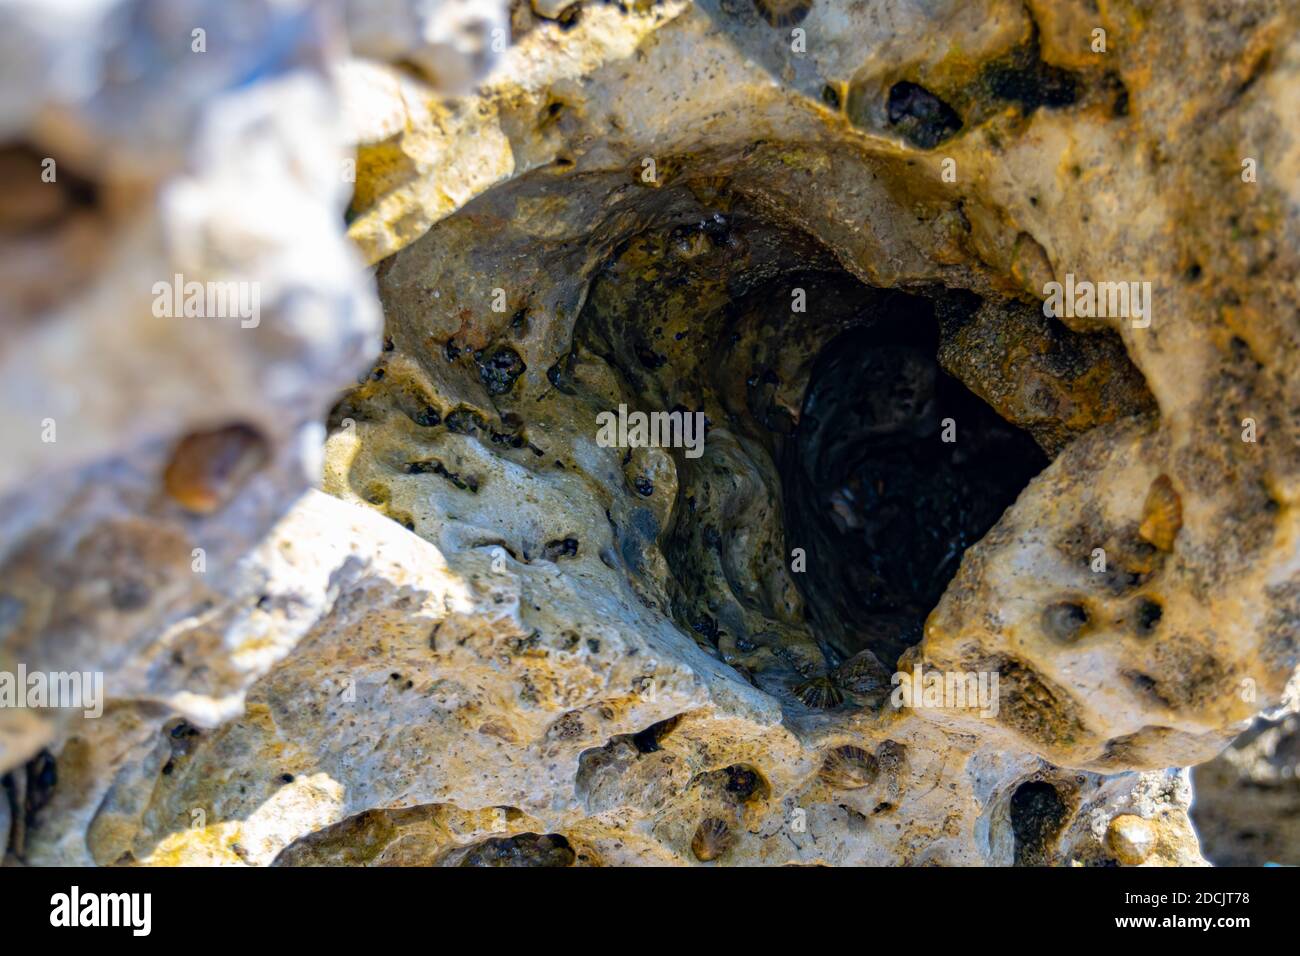 Sea rock hole with molusc Stock Photo